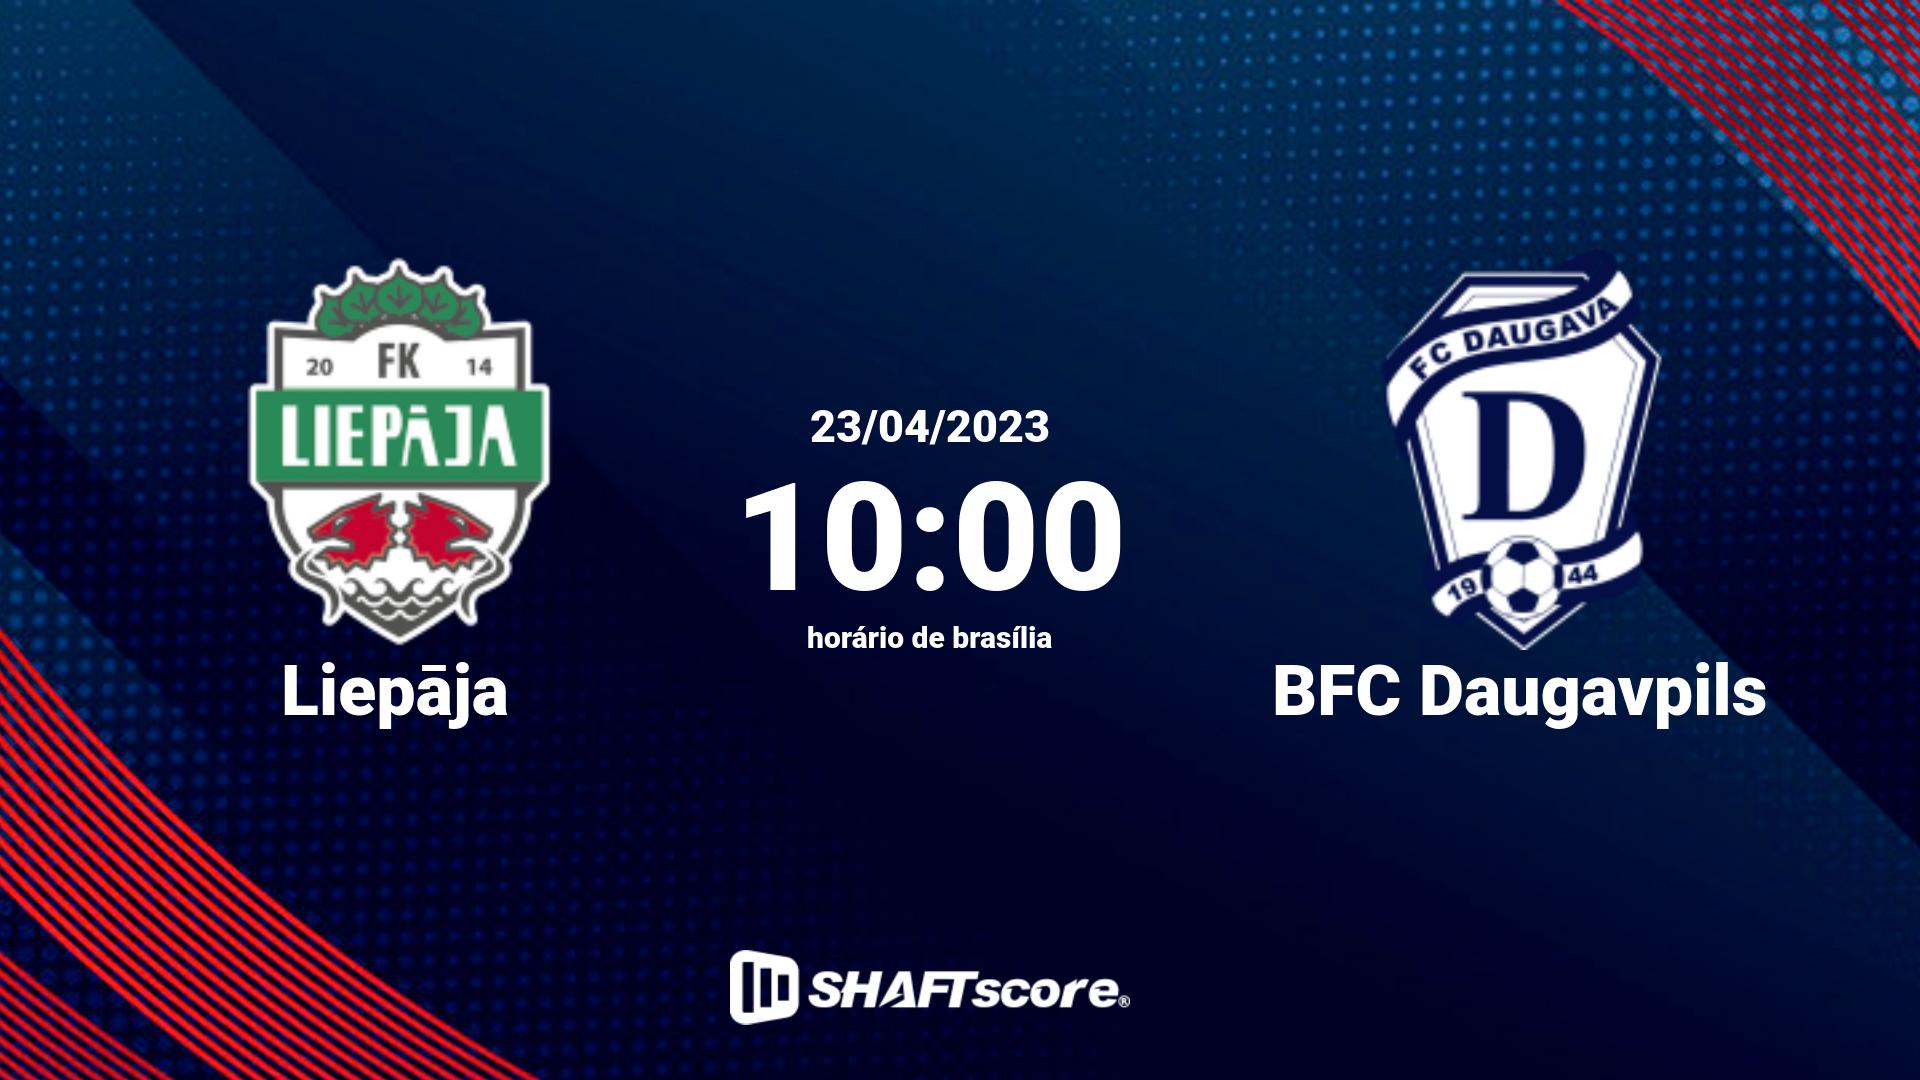 Estatísticas do jogo Liepāja vs BFC Daugavpils 23.04 10:00